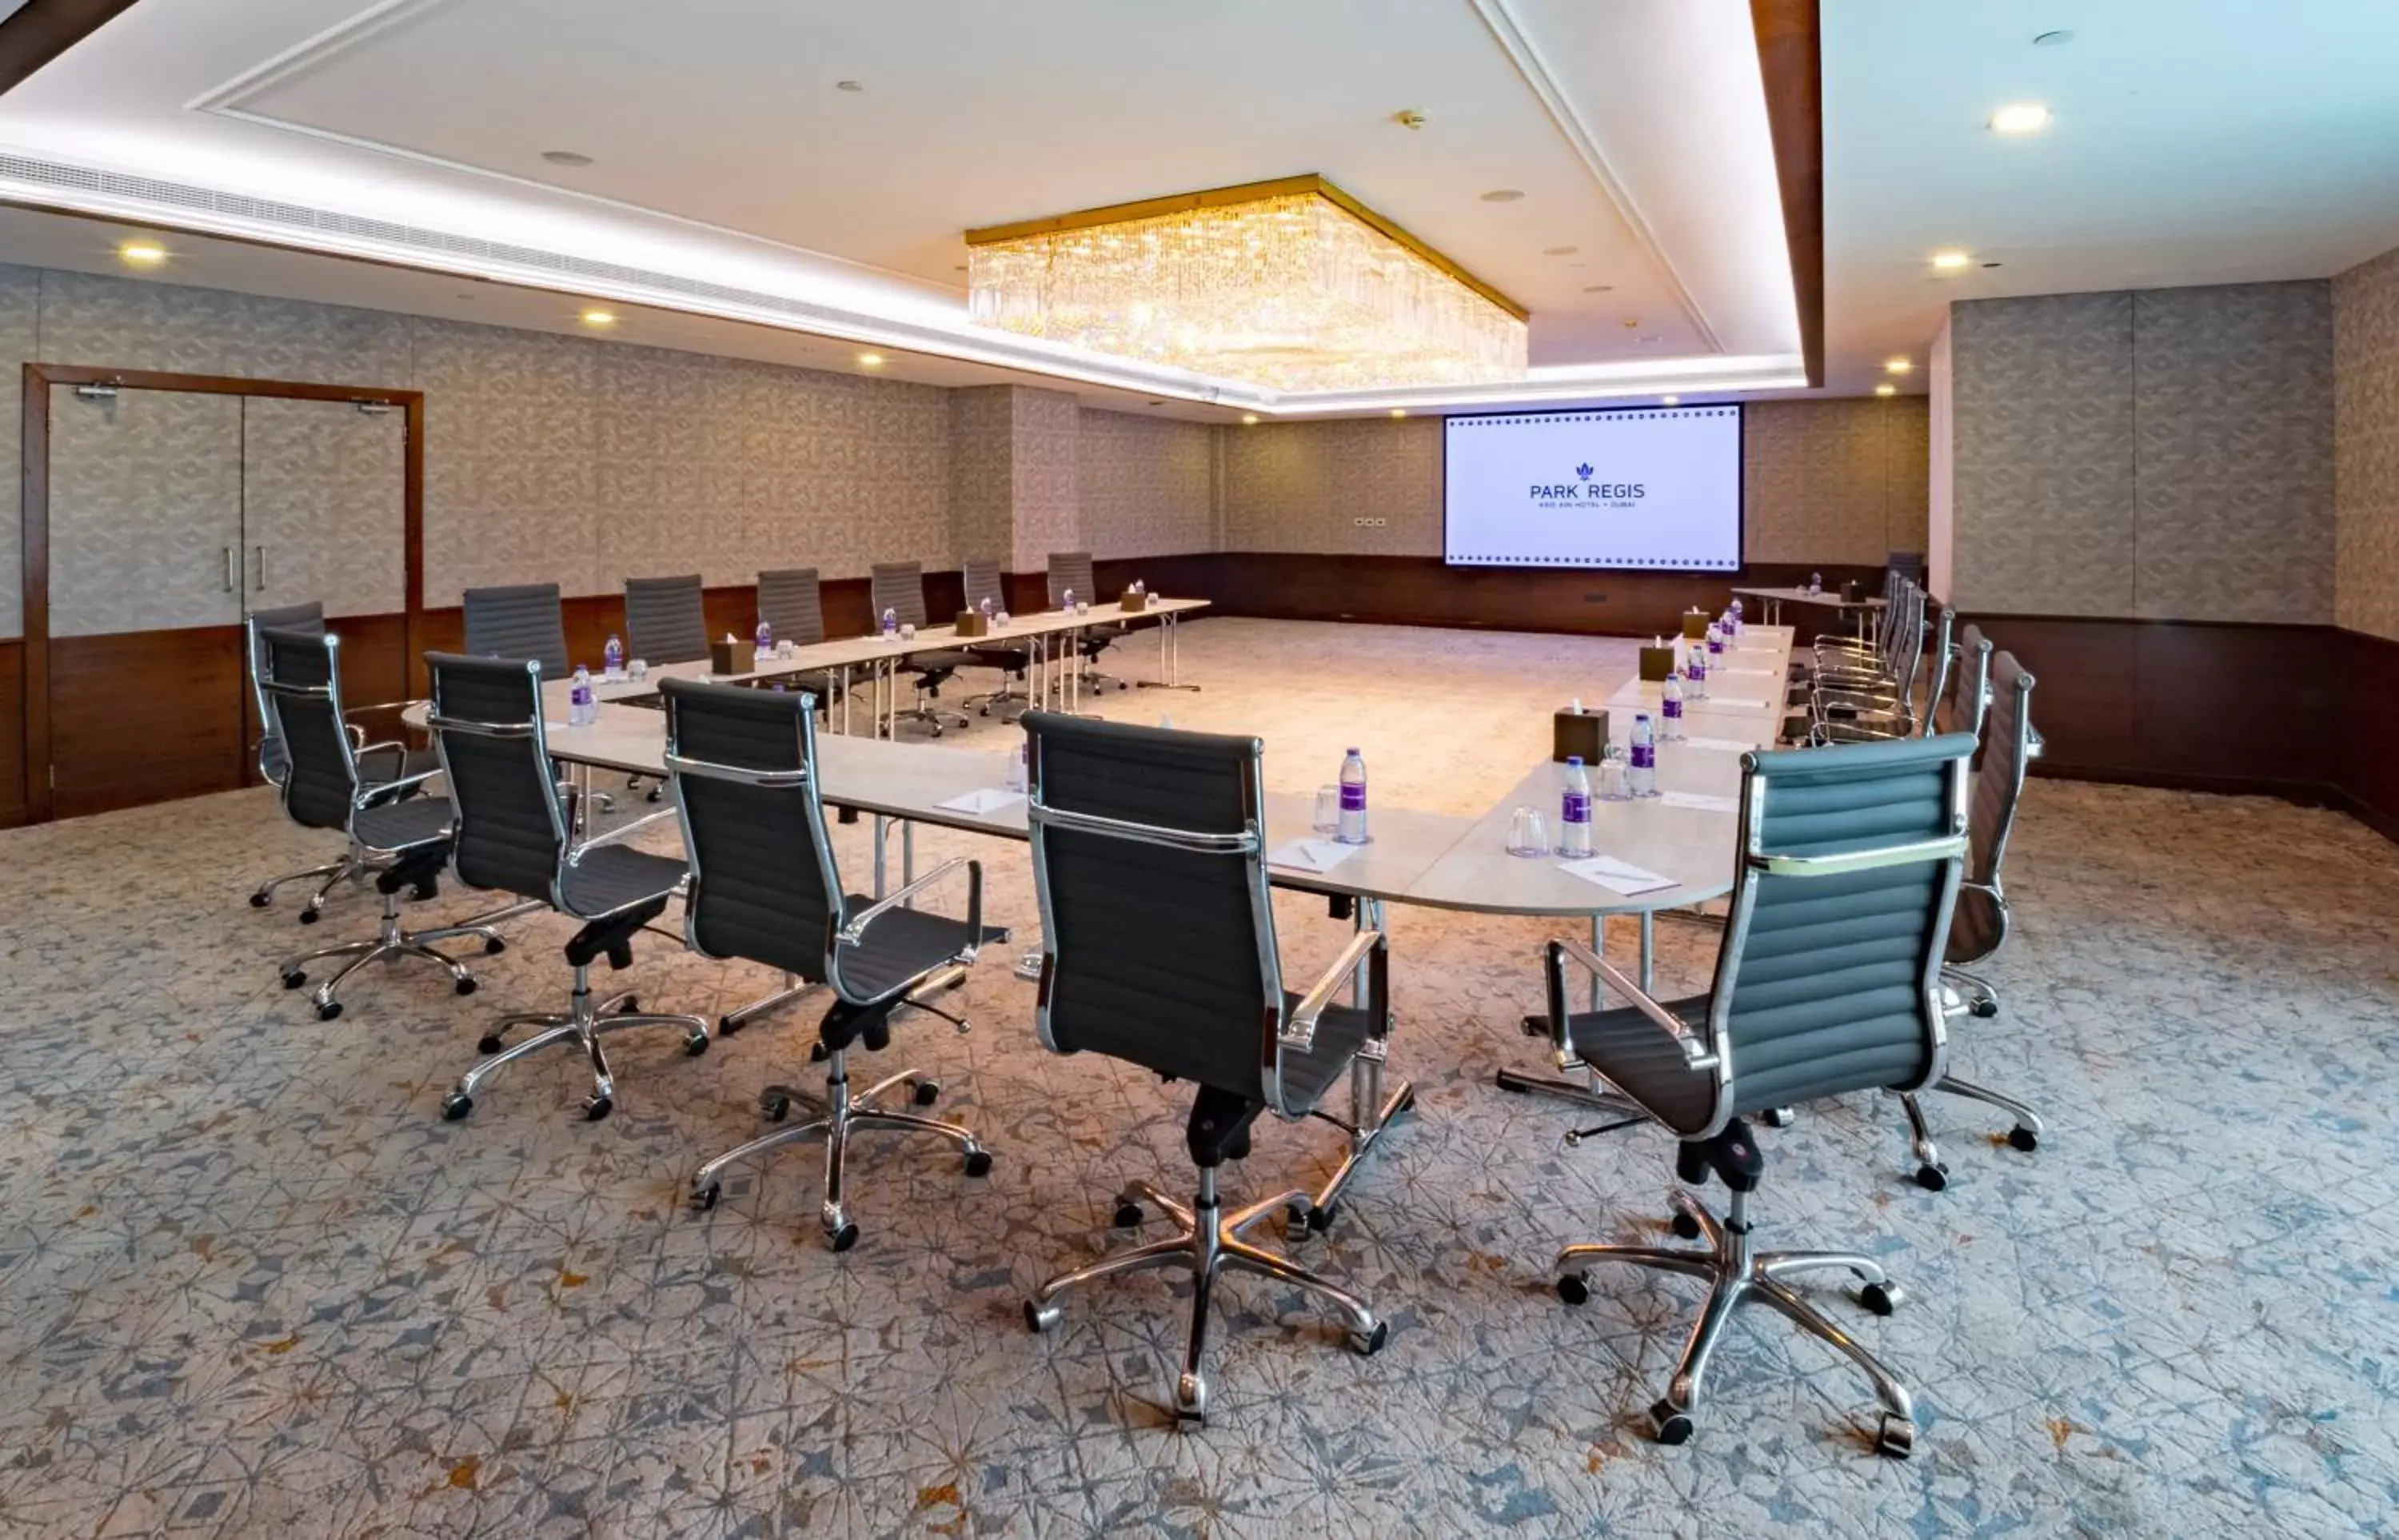 Meeting/conference room in Park Regis Kris Kin Hotel